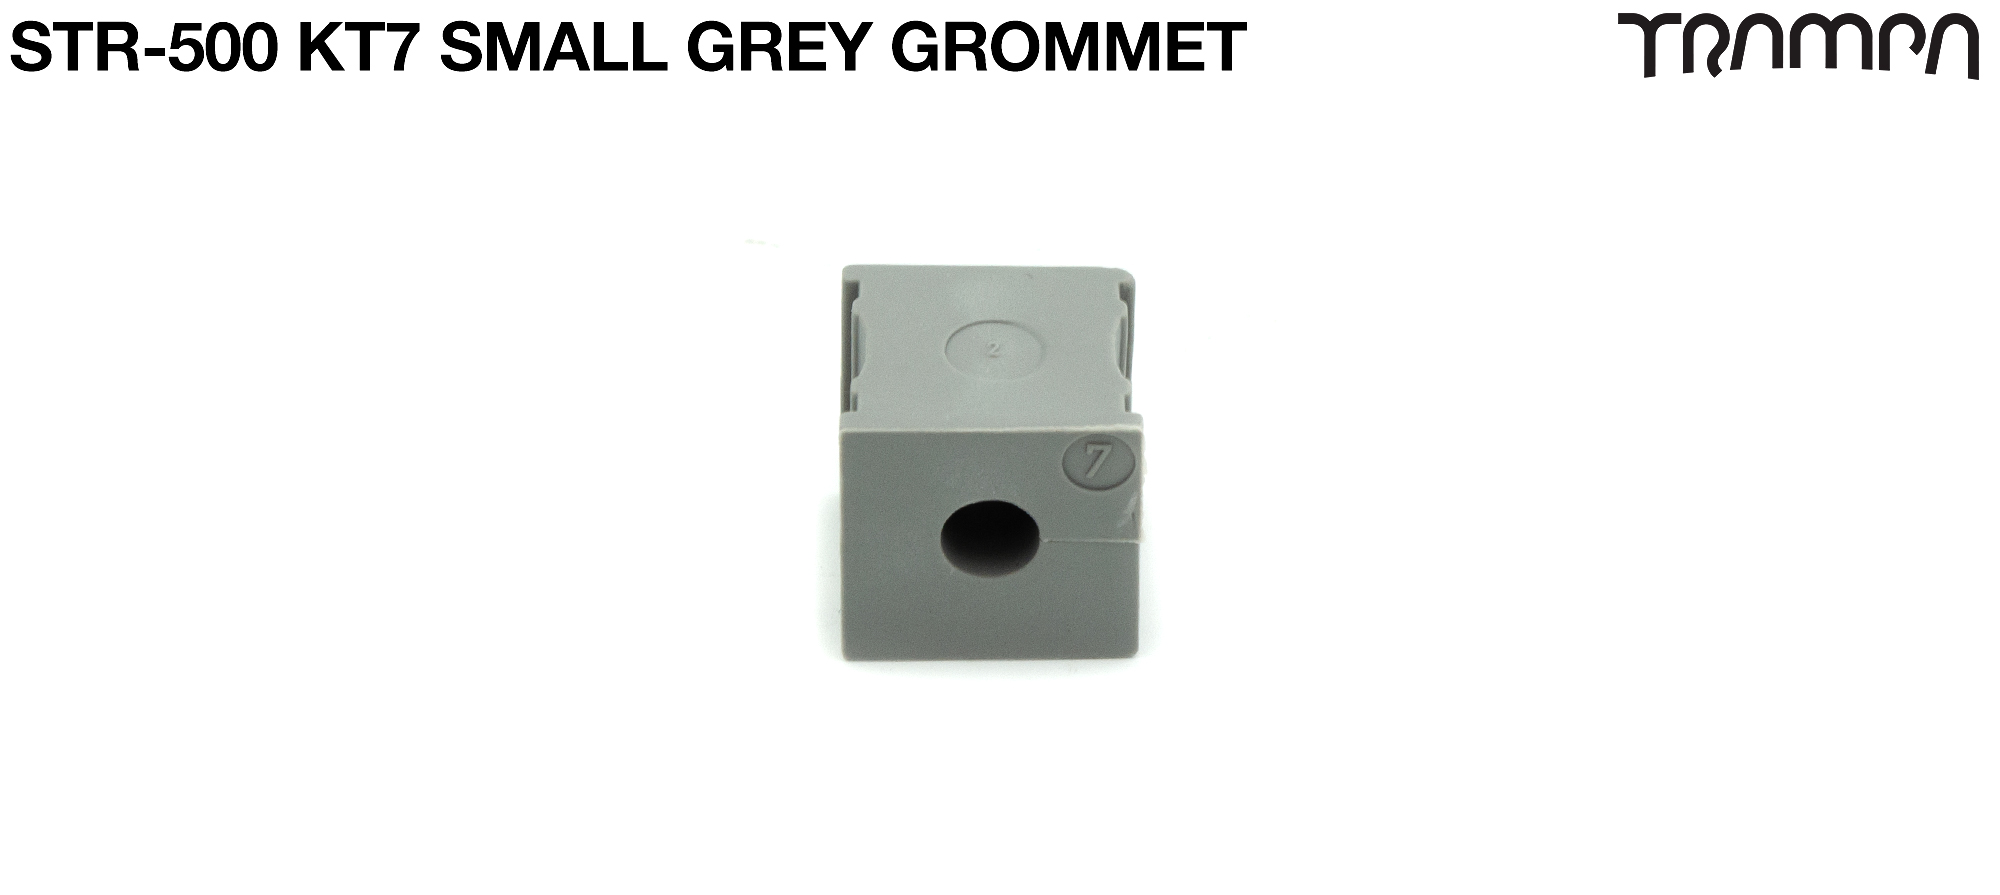 KT7 Small Grey Grommet 